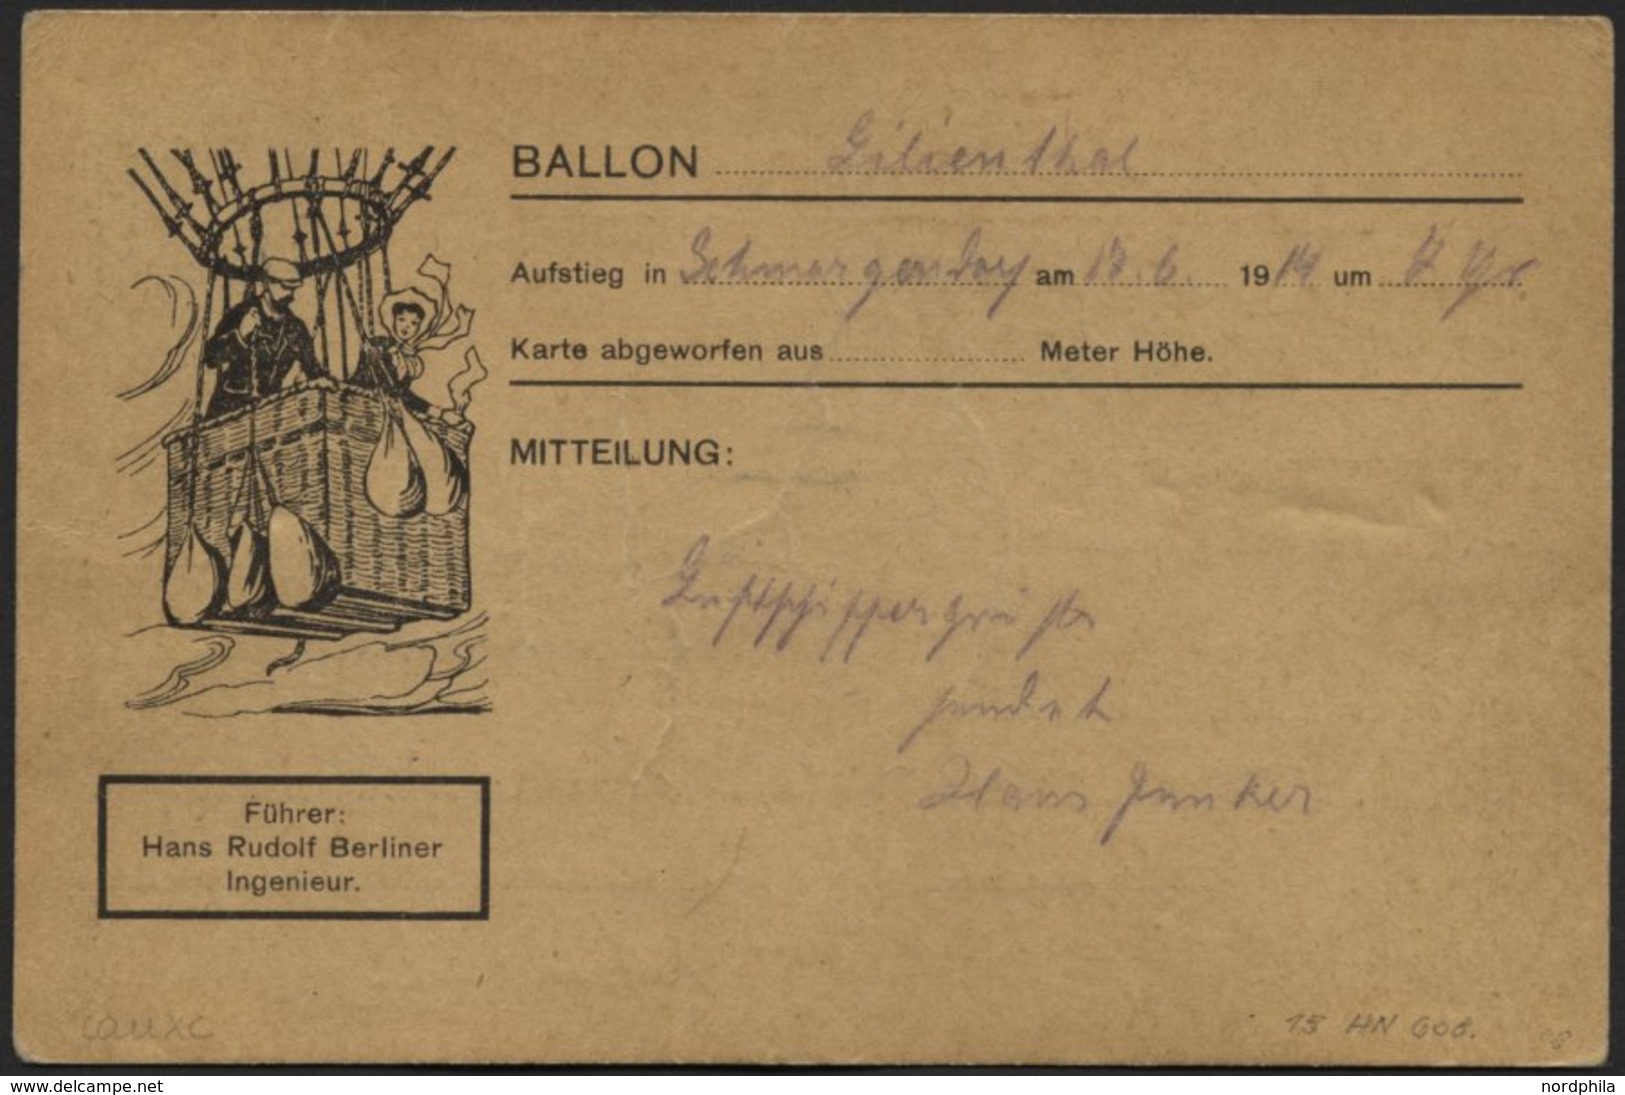 BALLON-FAHRTEN 1897-1916 17.6.1914, Berliner Verein Für Luftschiffahrt, Abwurf Vom Ballon LILIENTHAL Und Fundvermerk, Po - Fesselballons